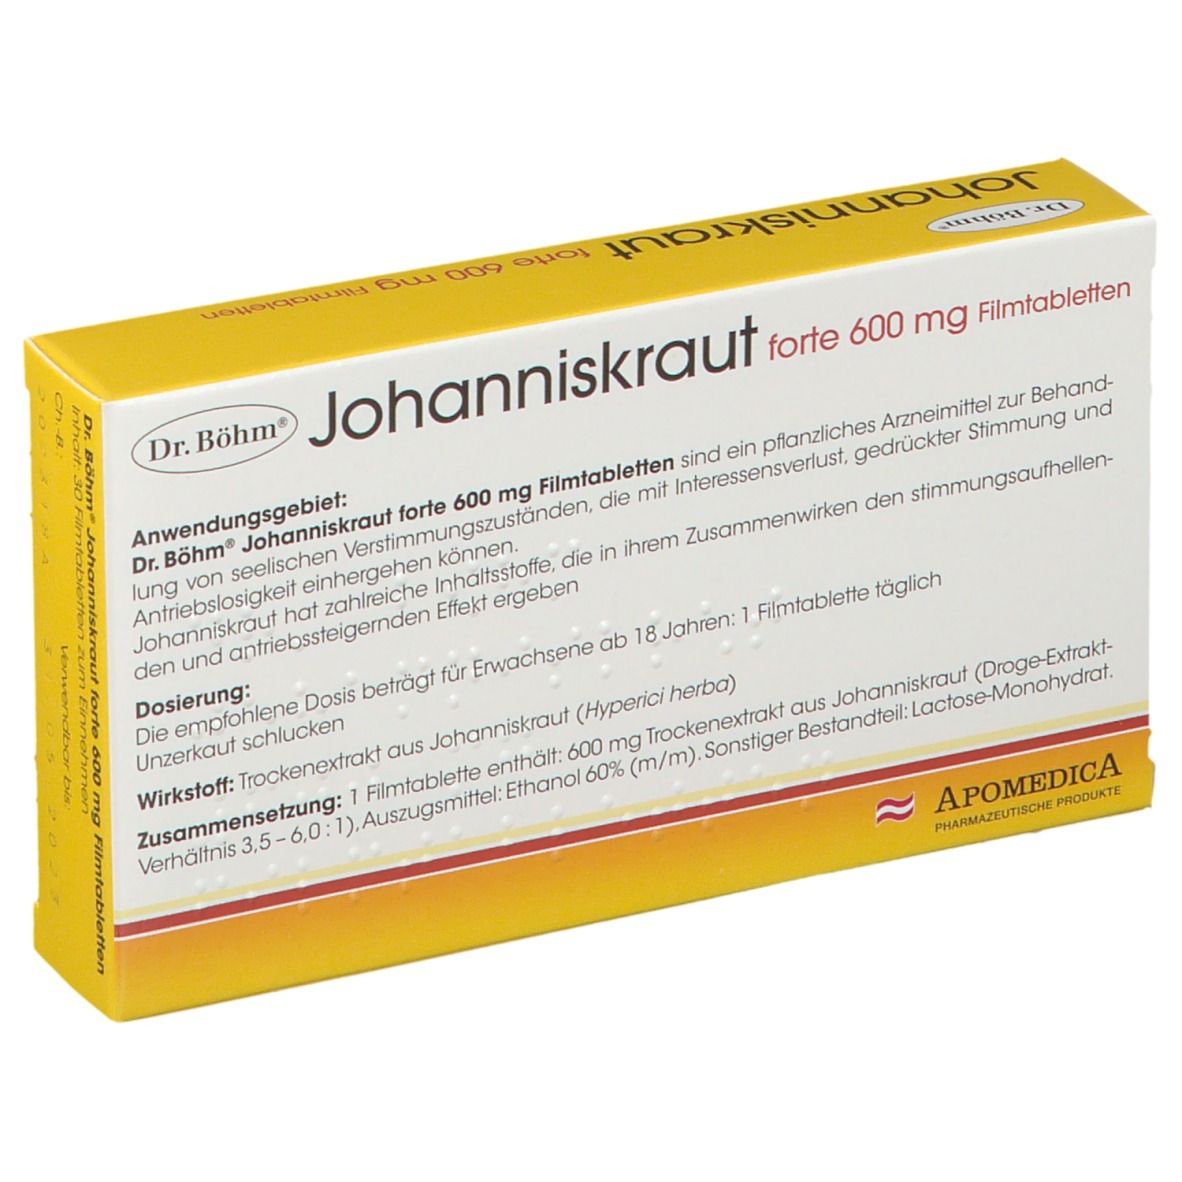 Dr. Böhm® Johanniskraut 600 mg forte Filmtabletten